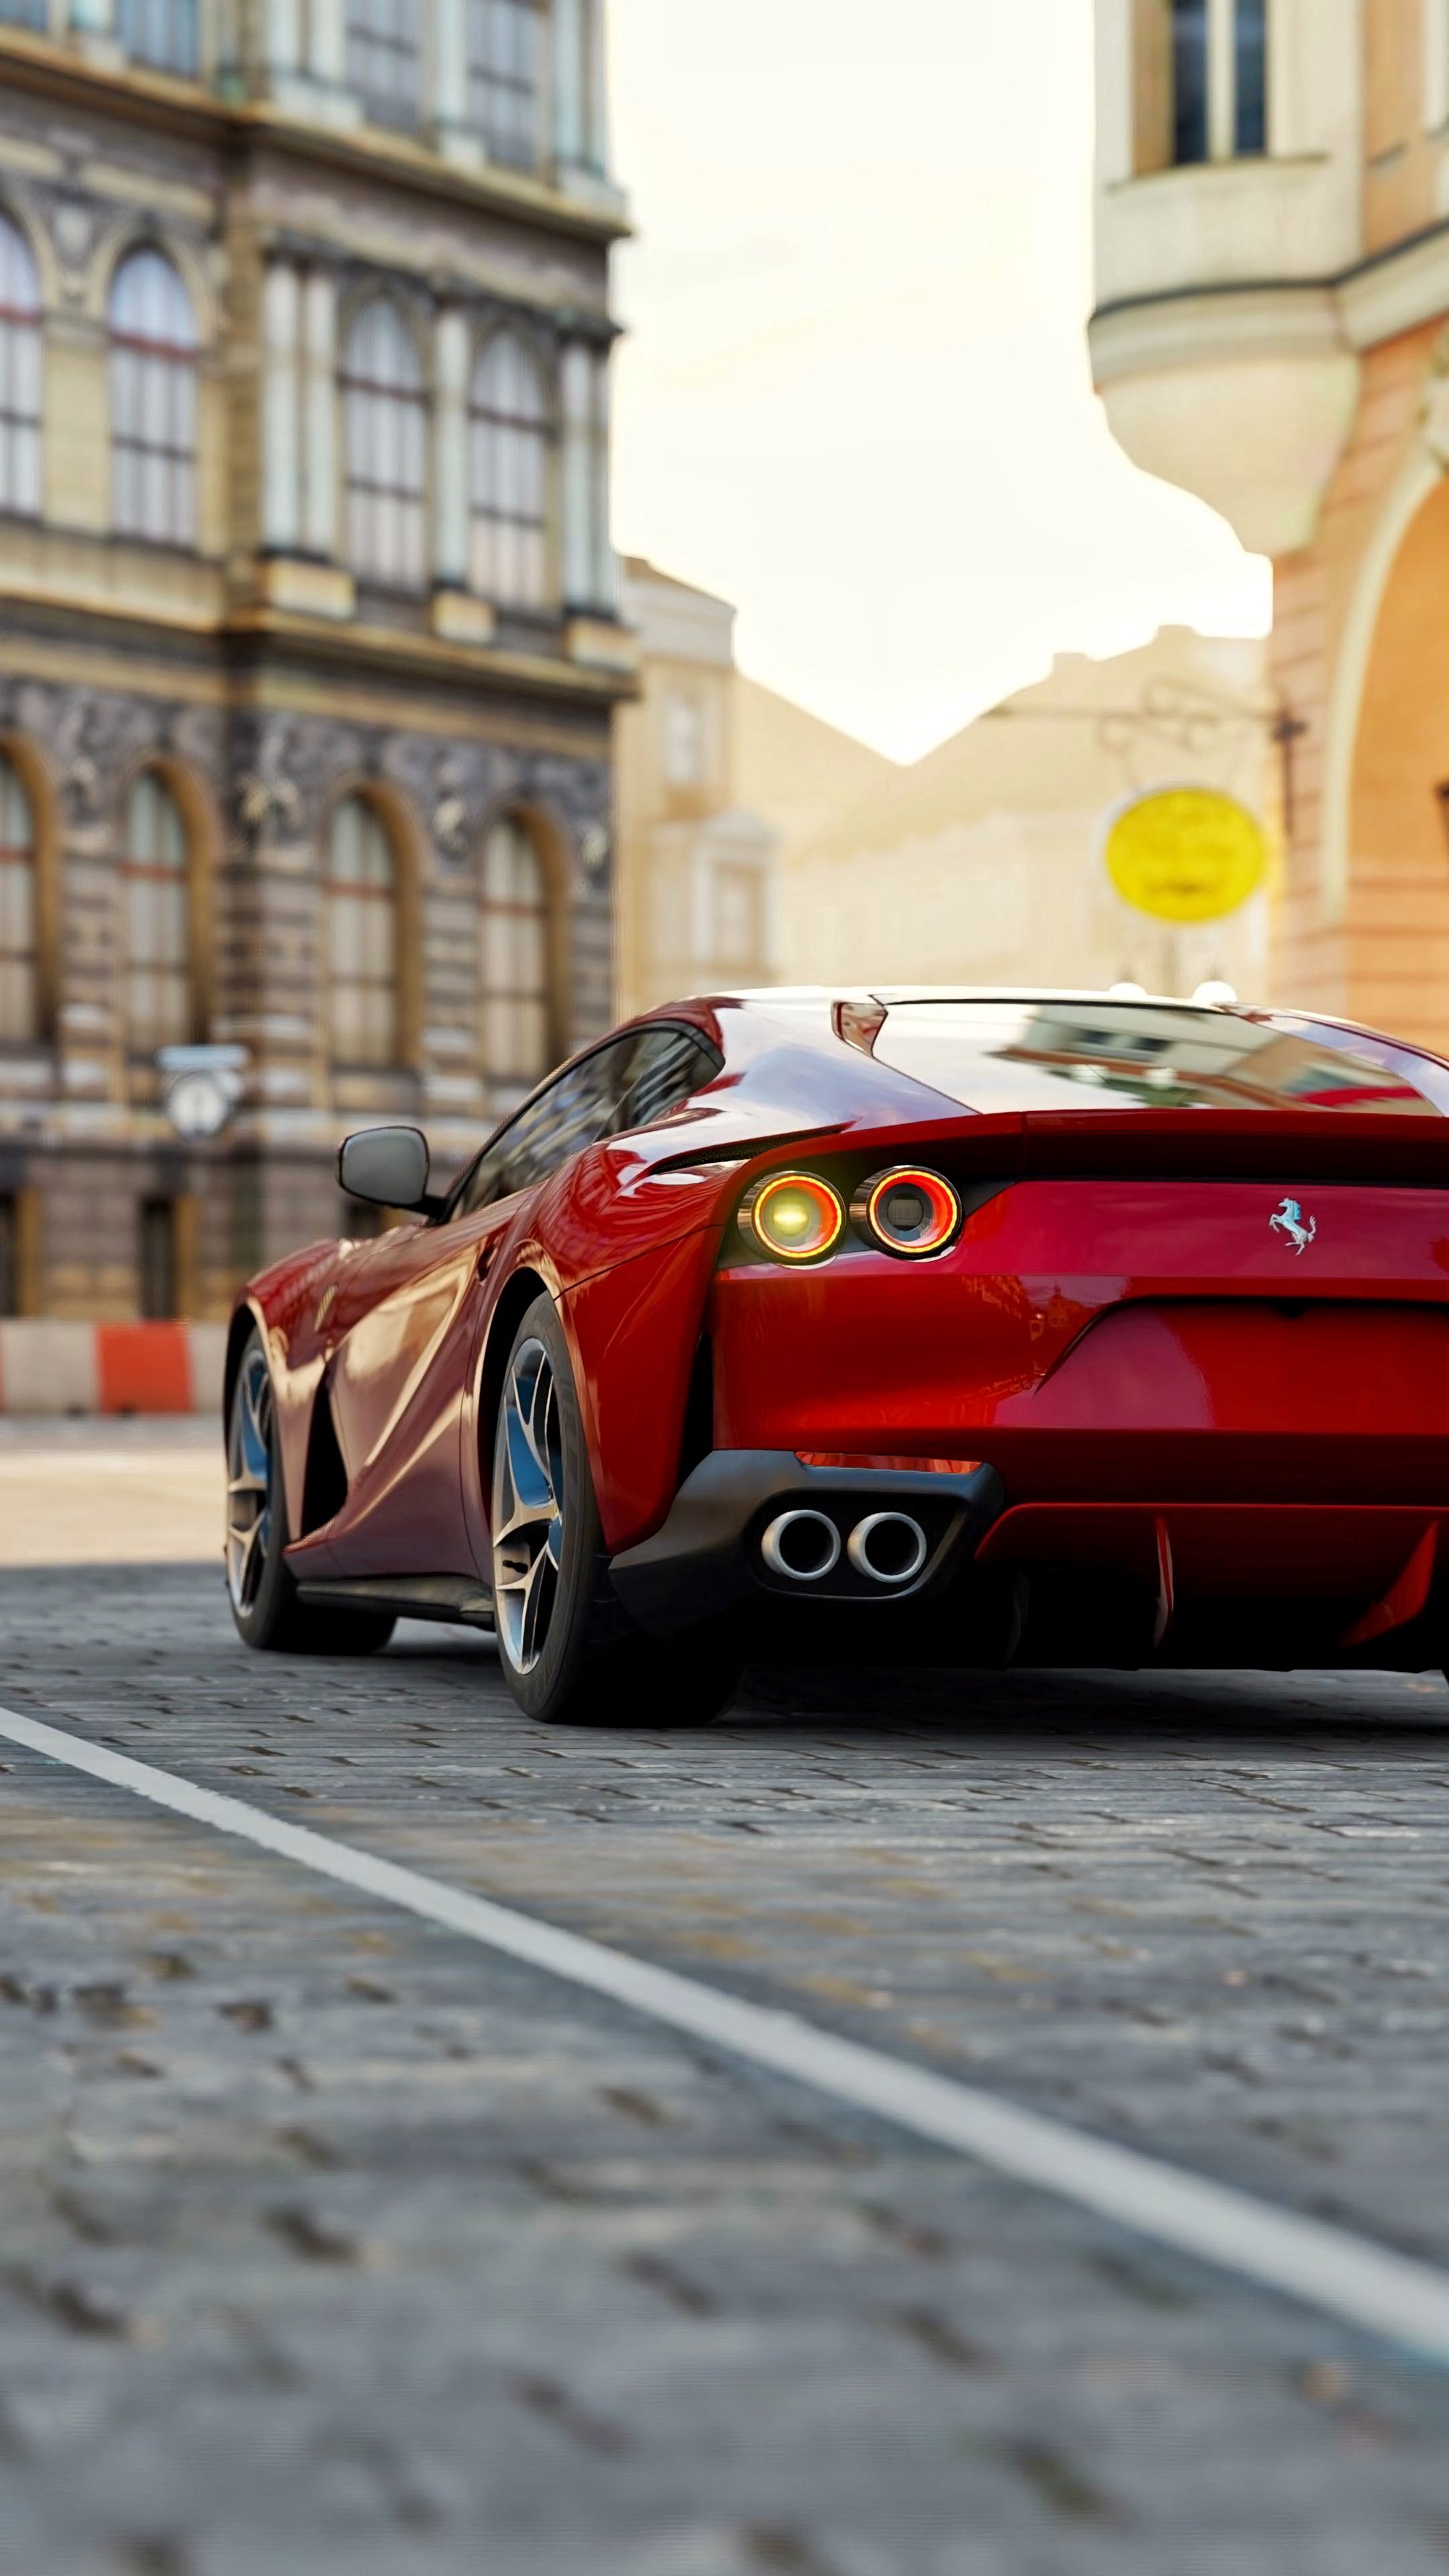 8k Ferrari Images